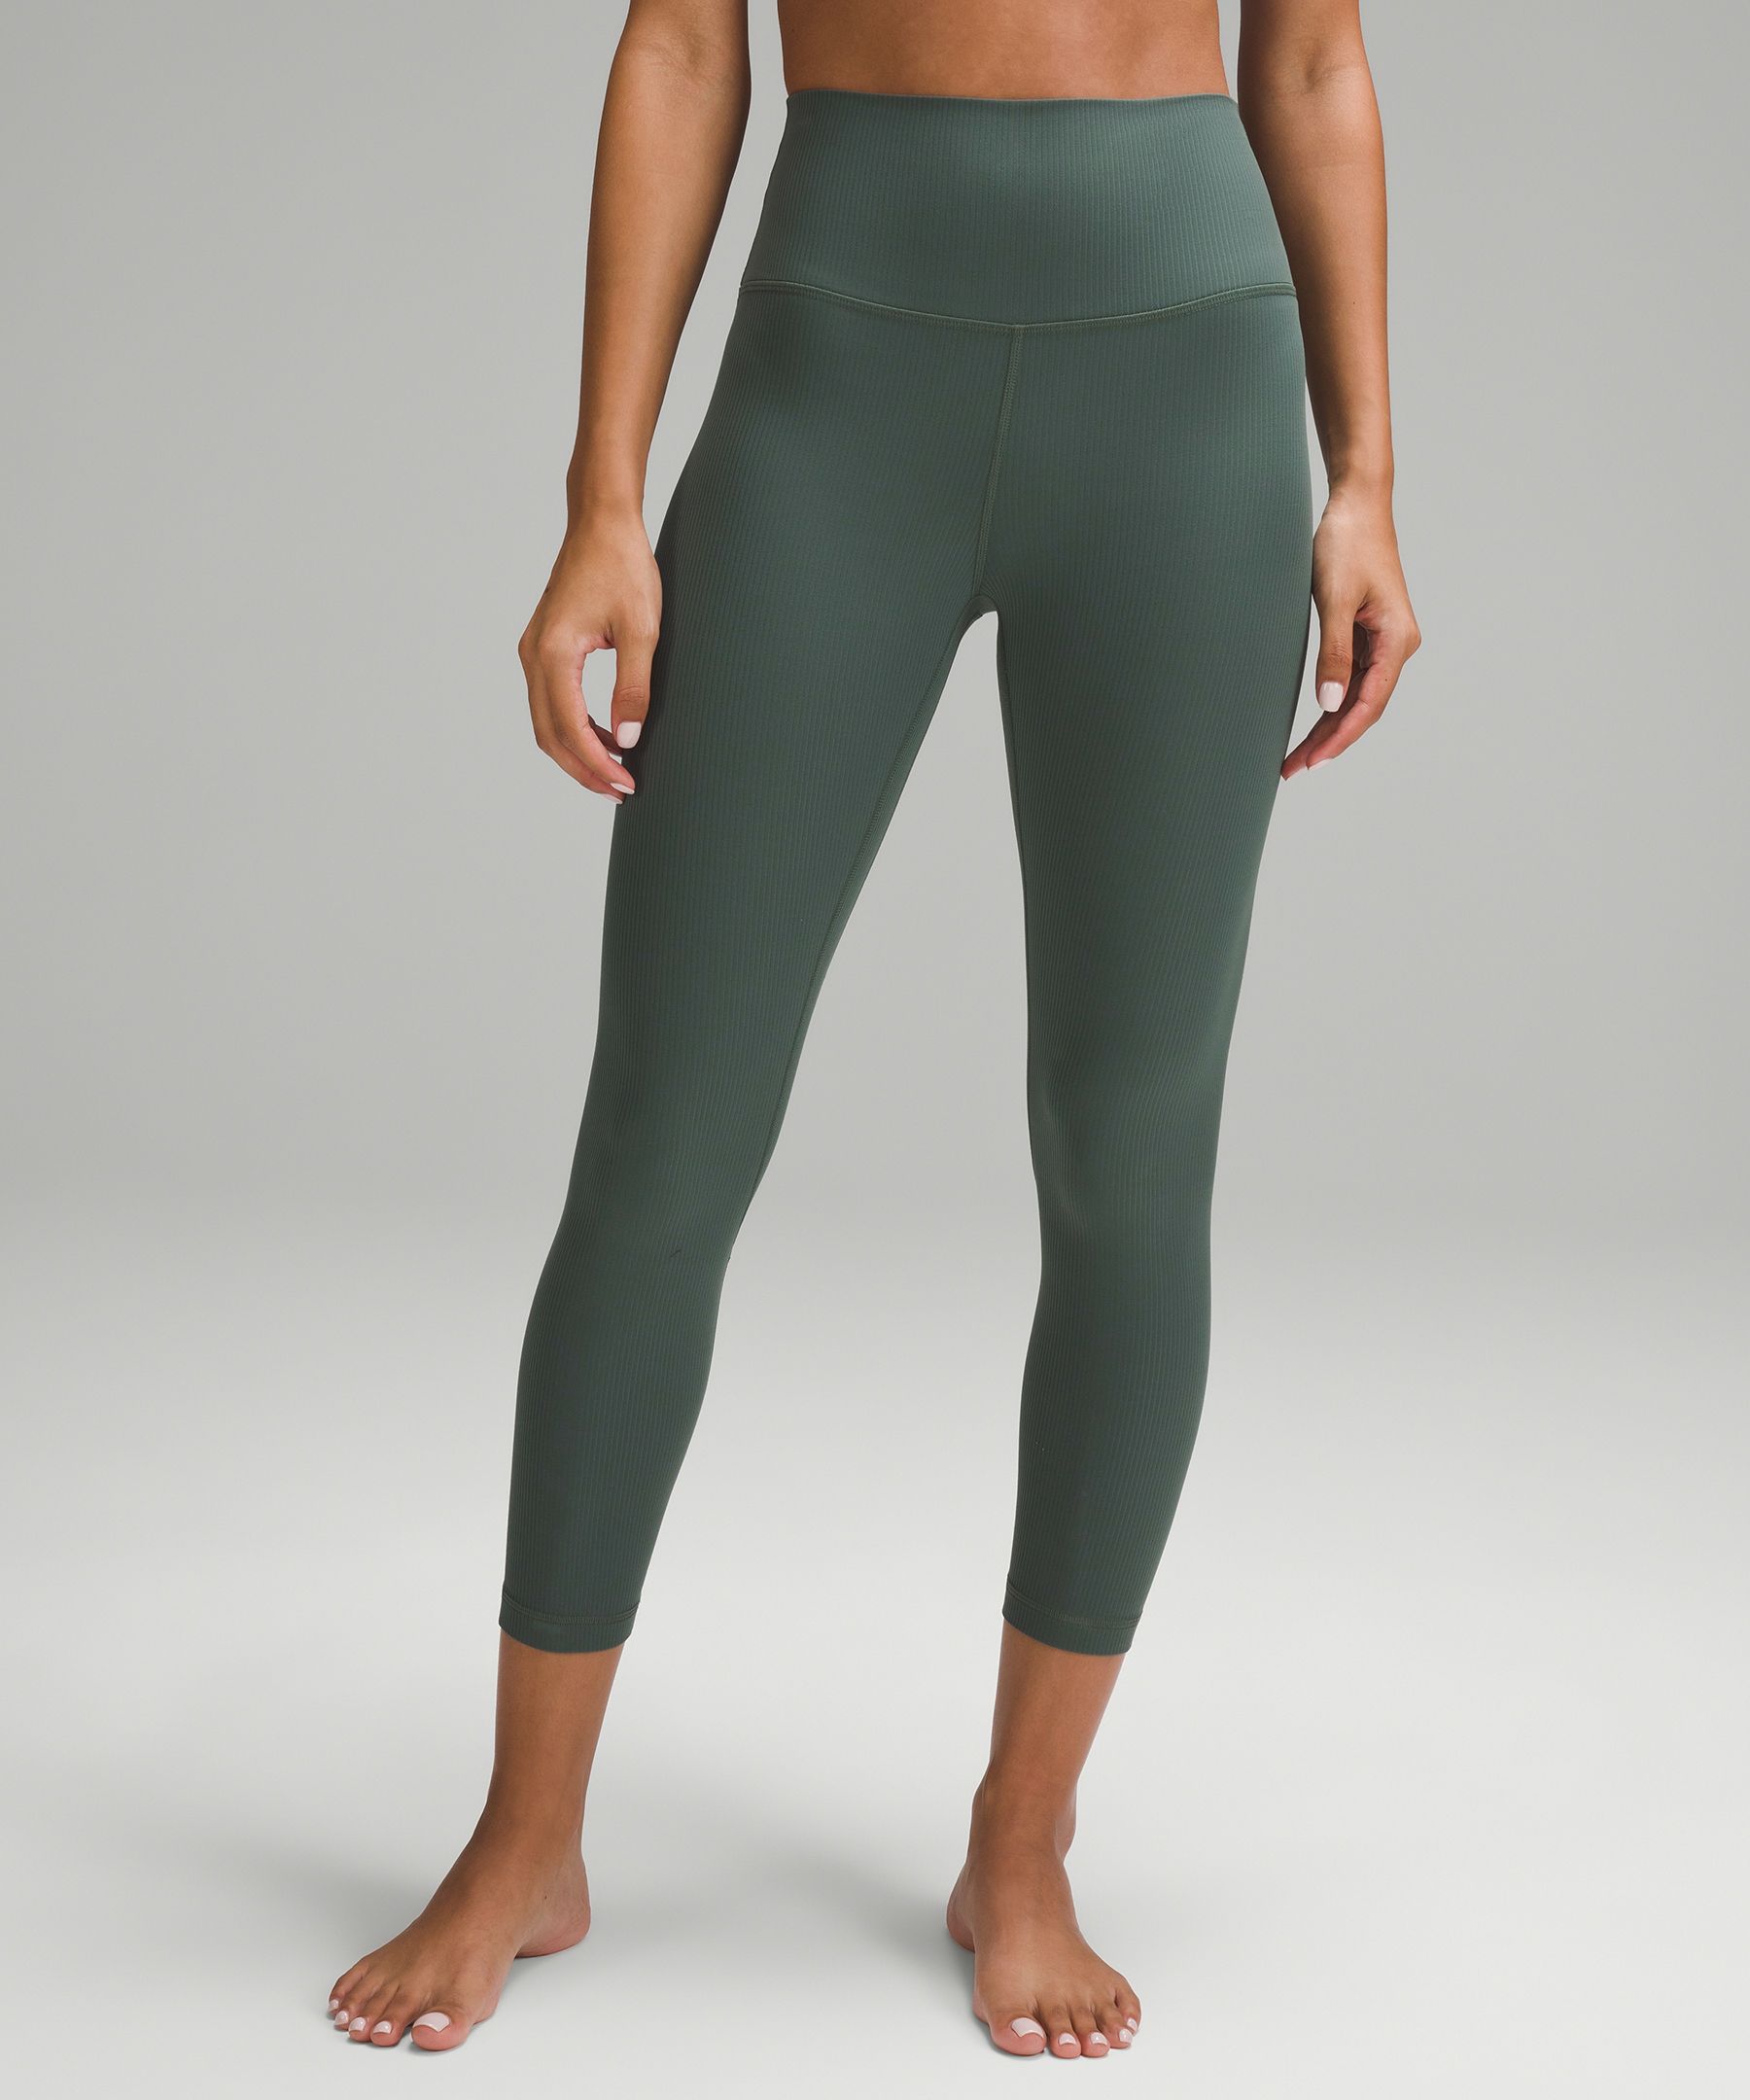 Lululemon Women's Leggings Size 8 Green Ebb Flow Capri Yoga